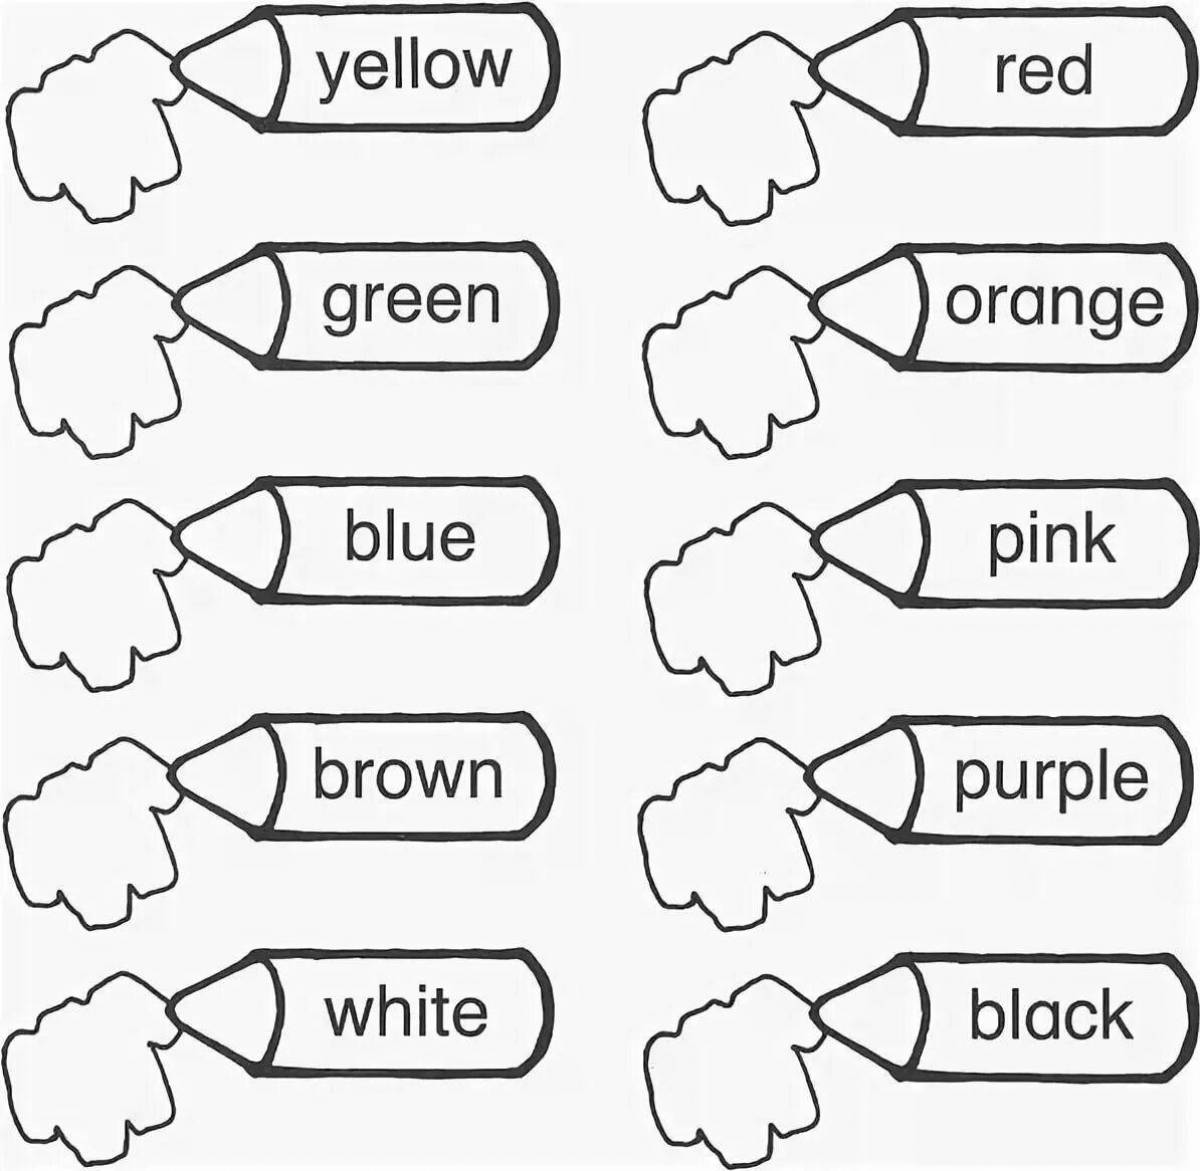 Упражнения на цвета в английском языке для детей